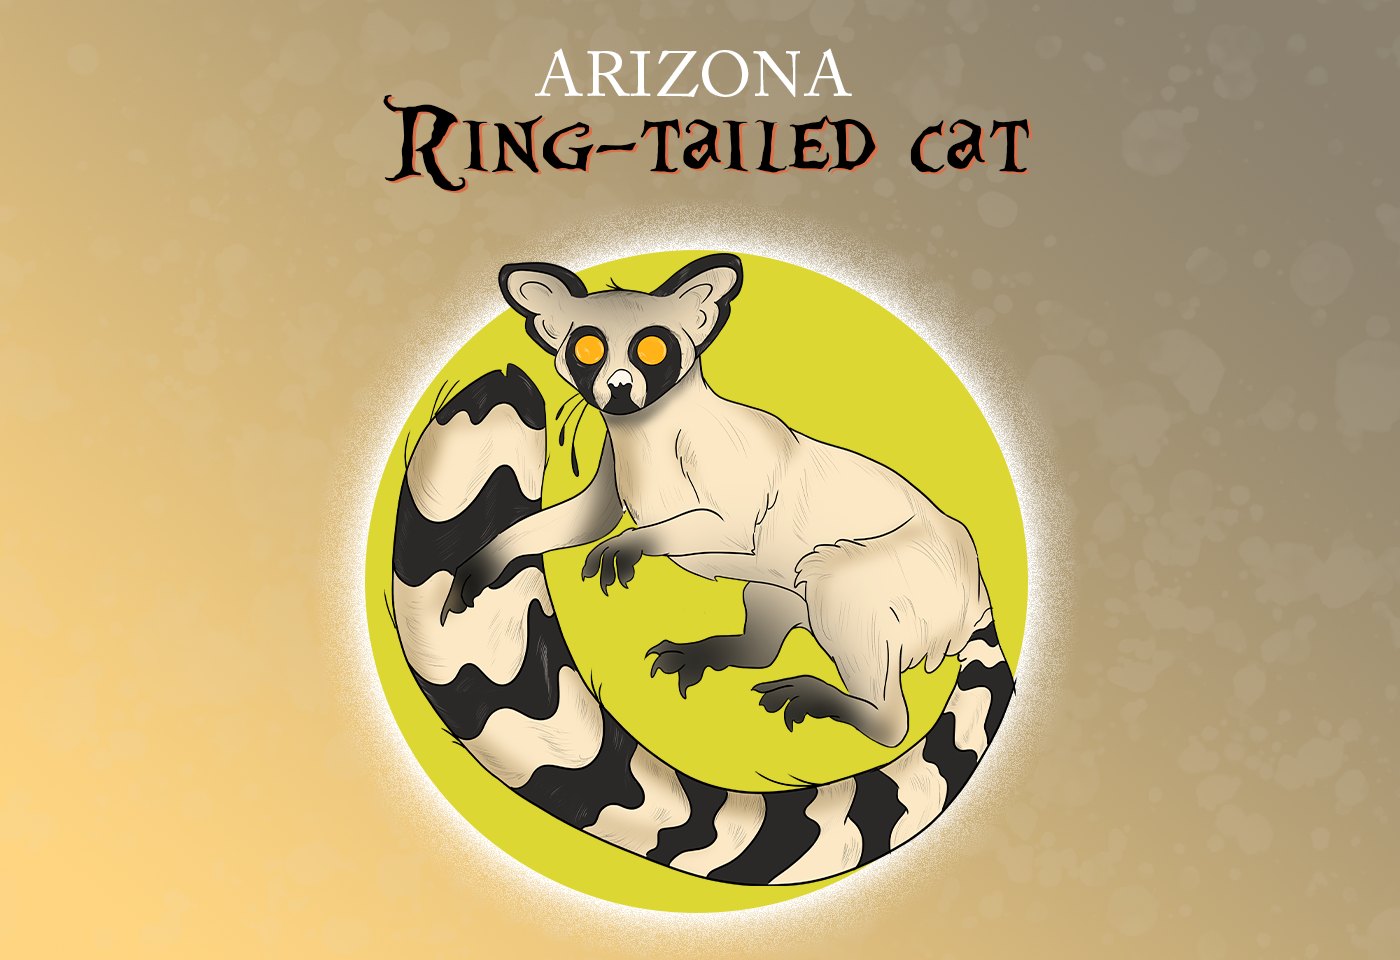 Arizona state mammal: Ringtail cat 